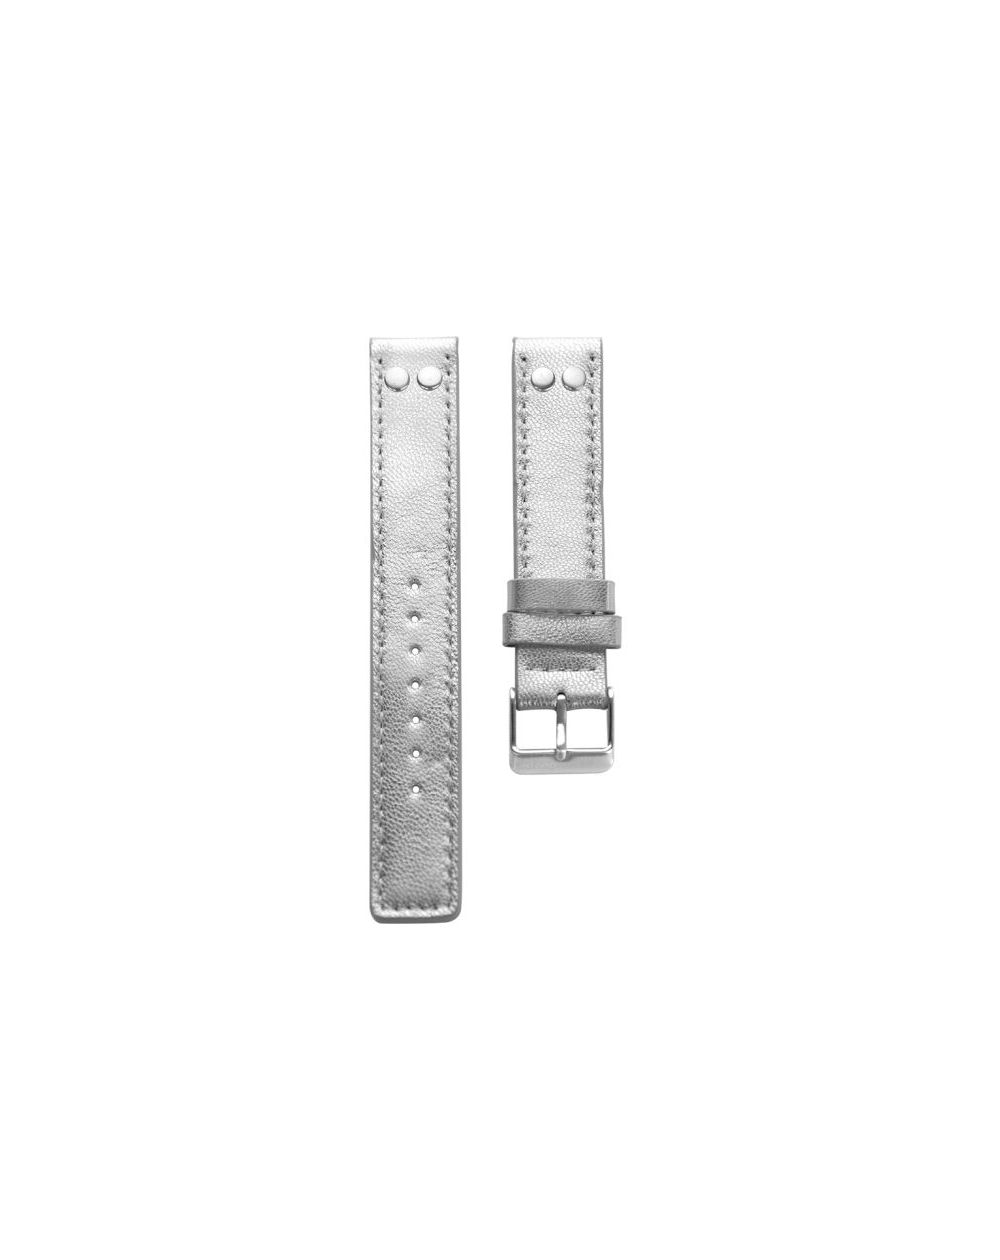 4.24 - silver studs 24 mm. - Bracelet pour montre Oozoo